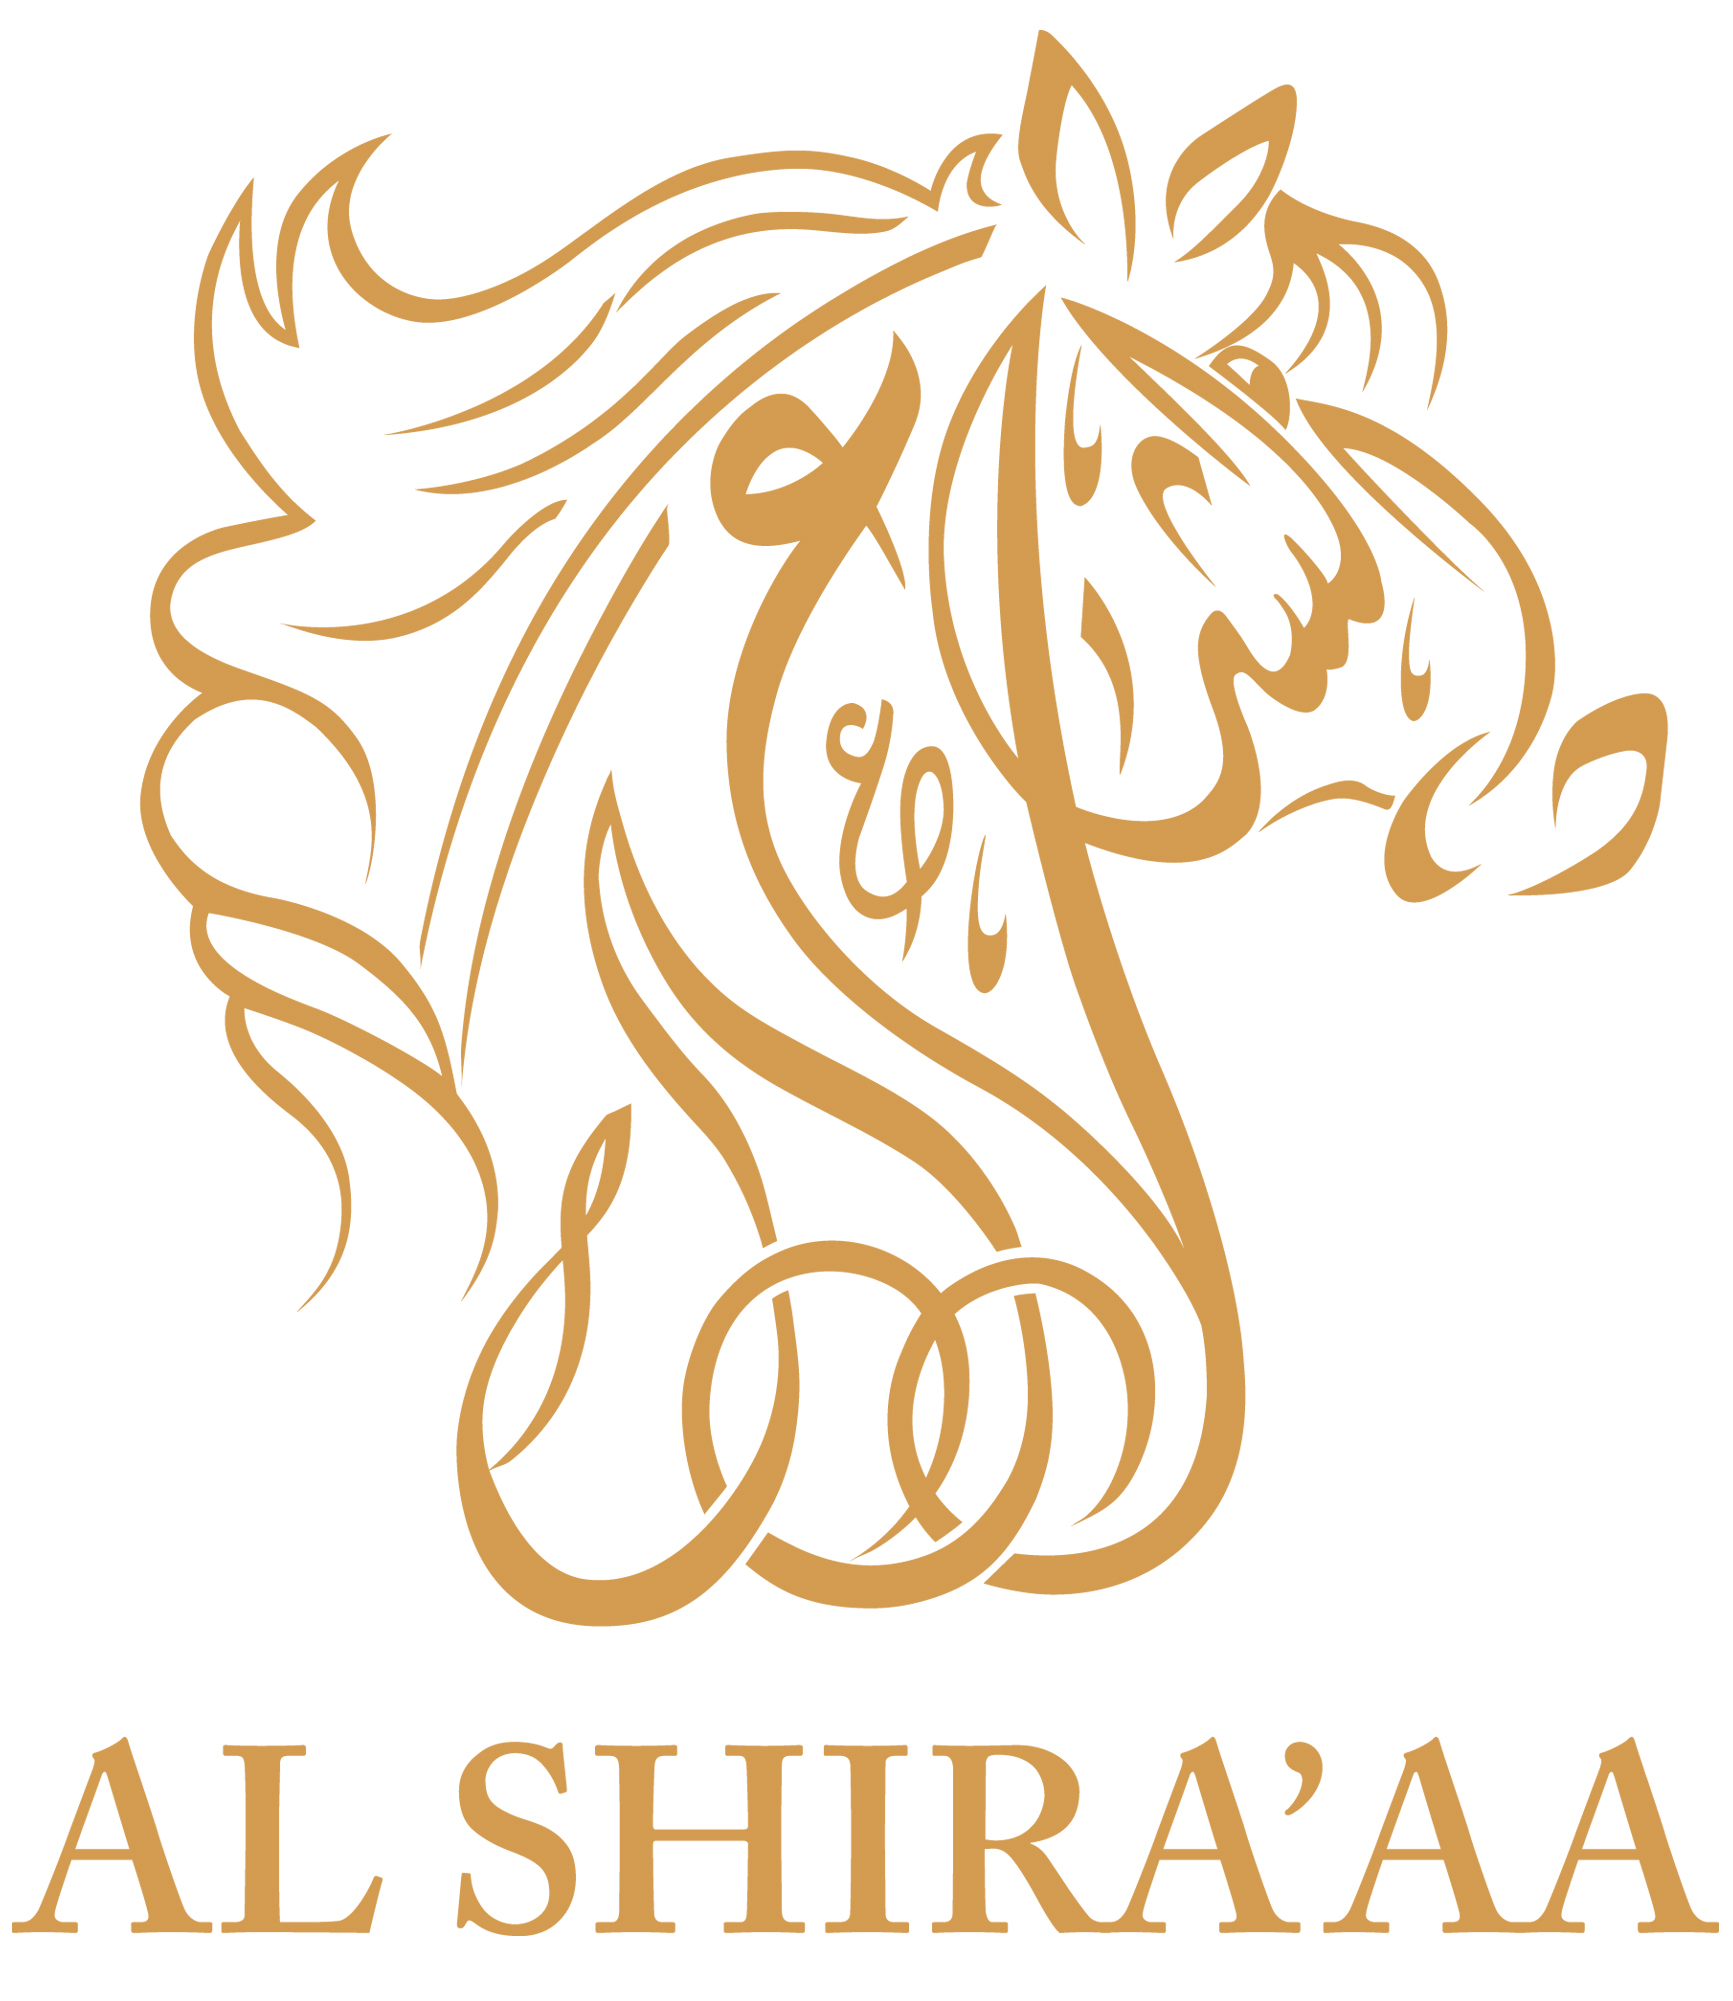 Al Shira'aa_logo_desert.jpg